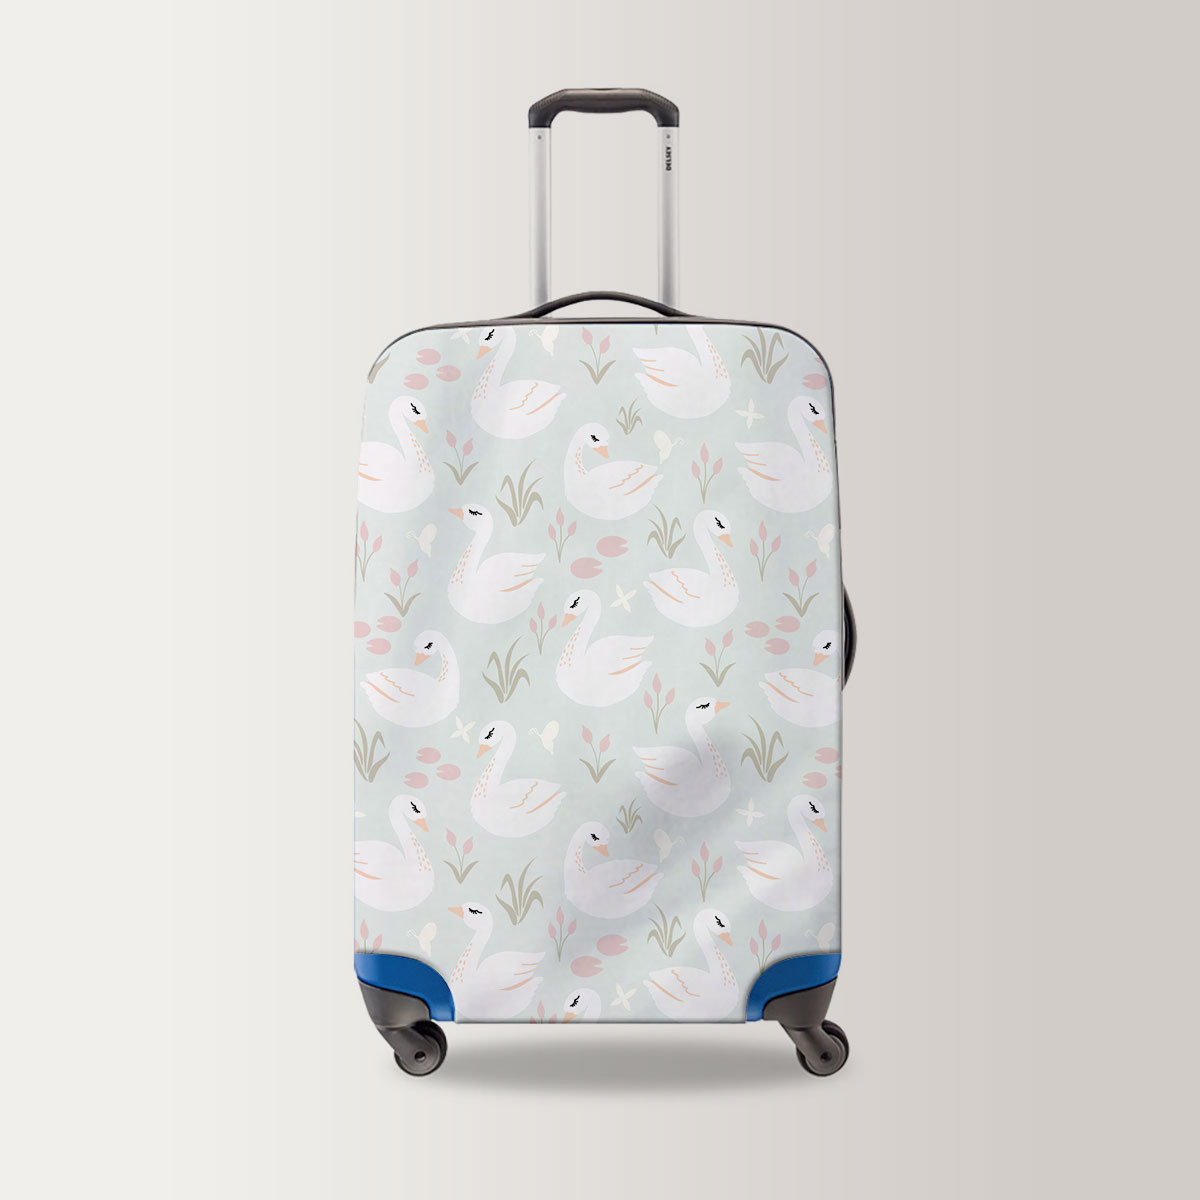 Pretty Swan Luggage Bag